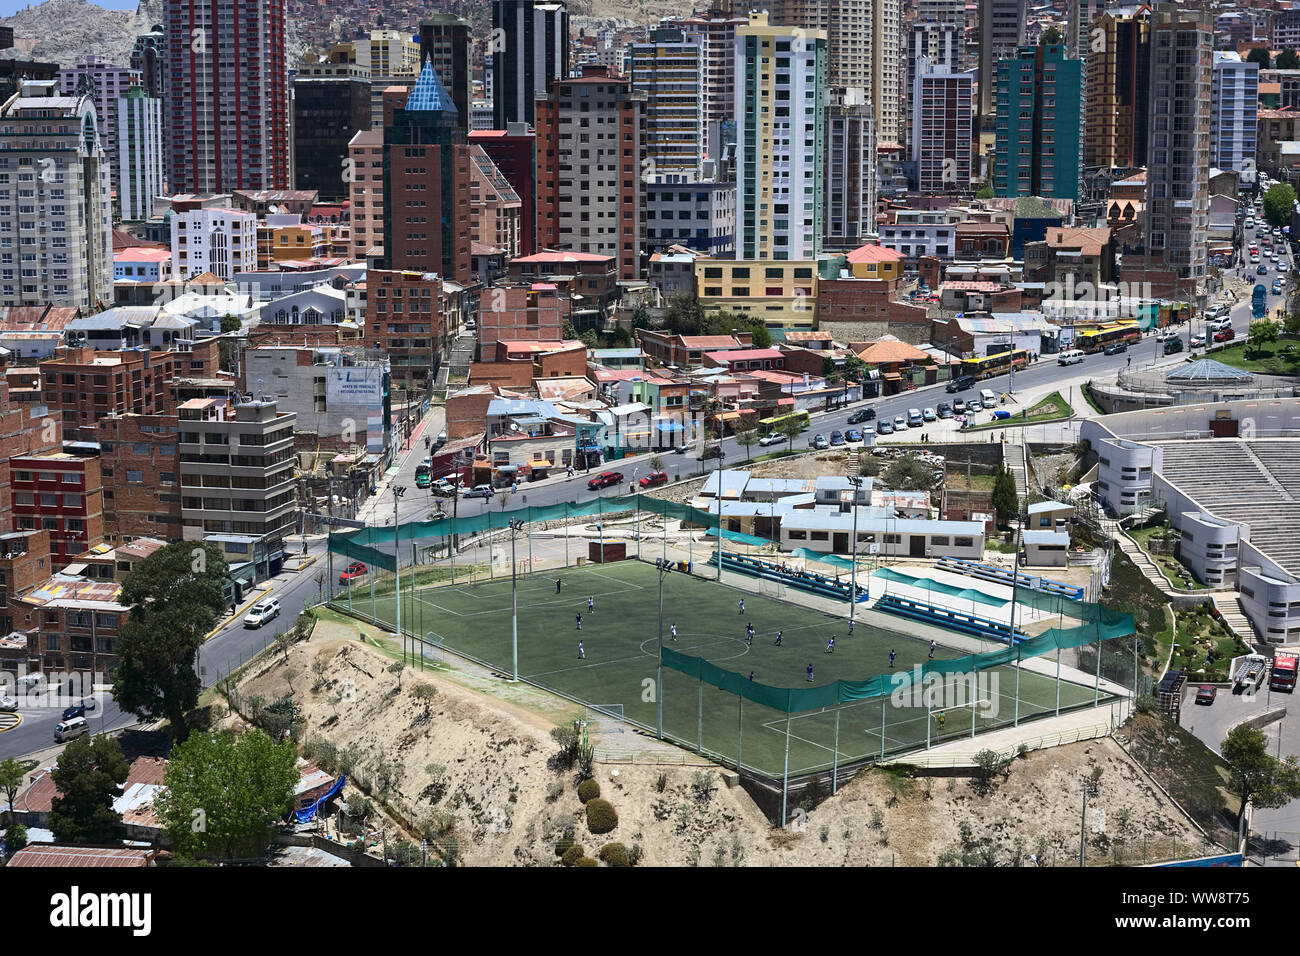 LA PAZ, BOLIVIA - OCTOBER 14, 2014: Cancha Zapata soccer field along Zapata avenue close to the Parque Urbano Central in La Paz, Bolivia Stock Photo